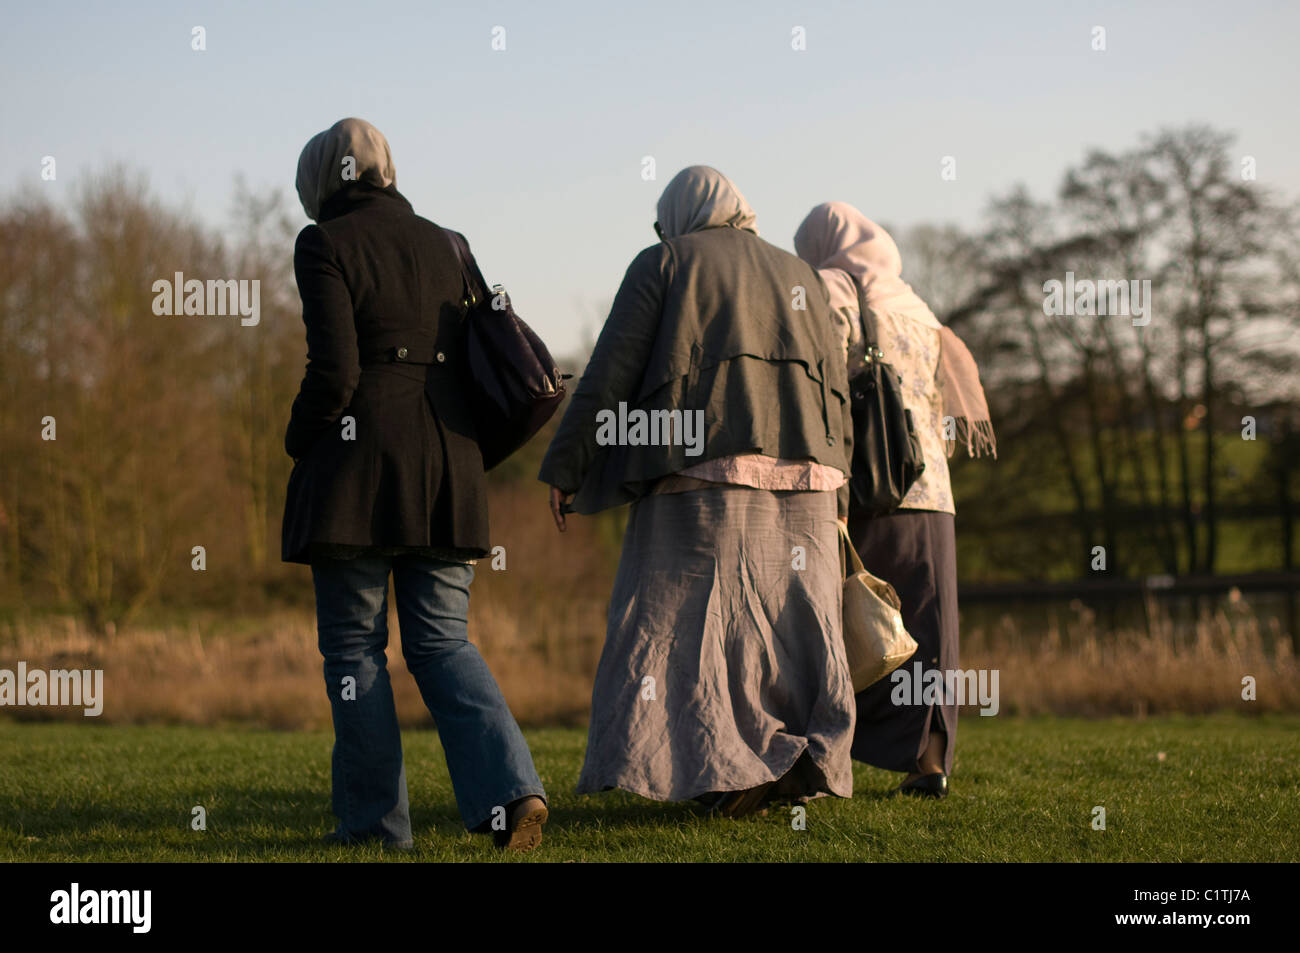 Three UK Muslim women. Stock Photo